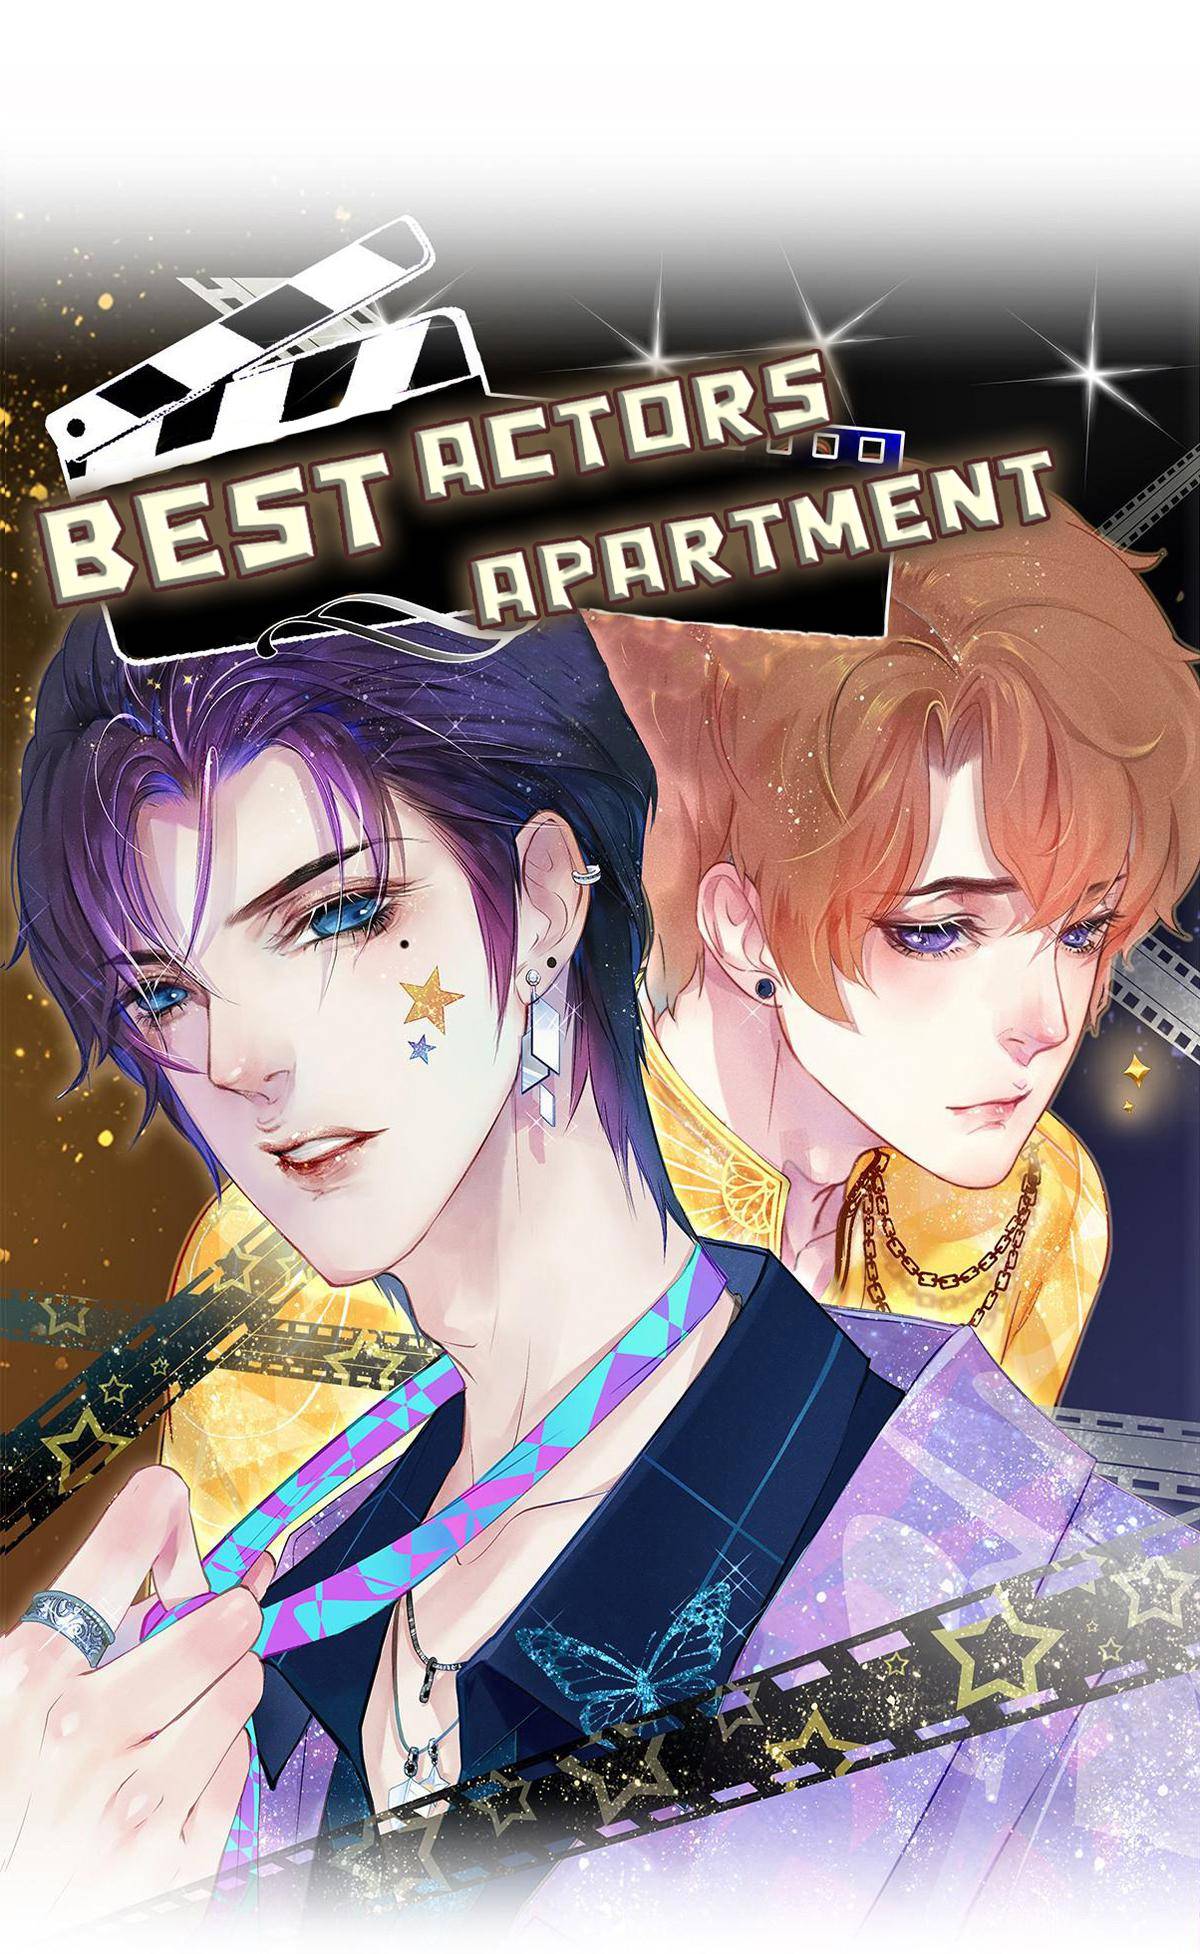 Best Actors Apartment - chapter 18 - #1